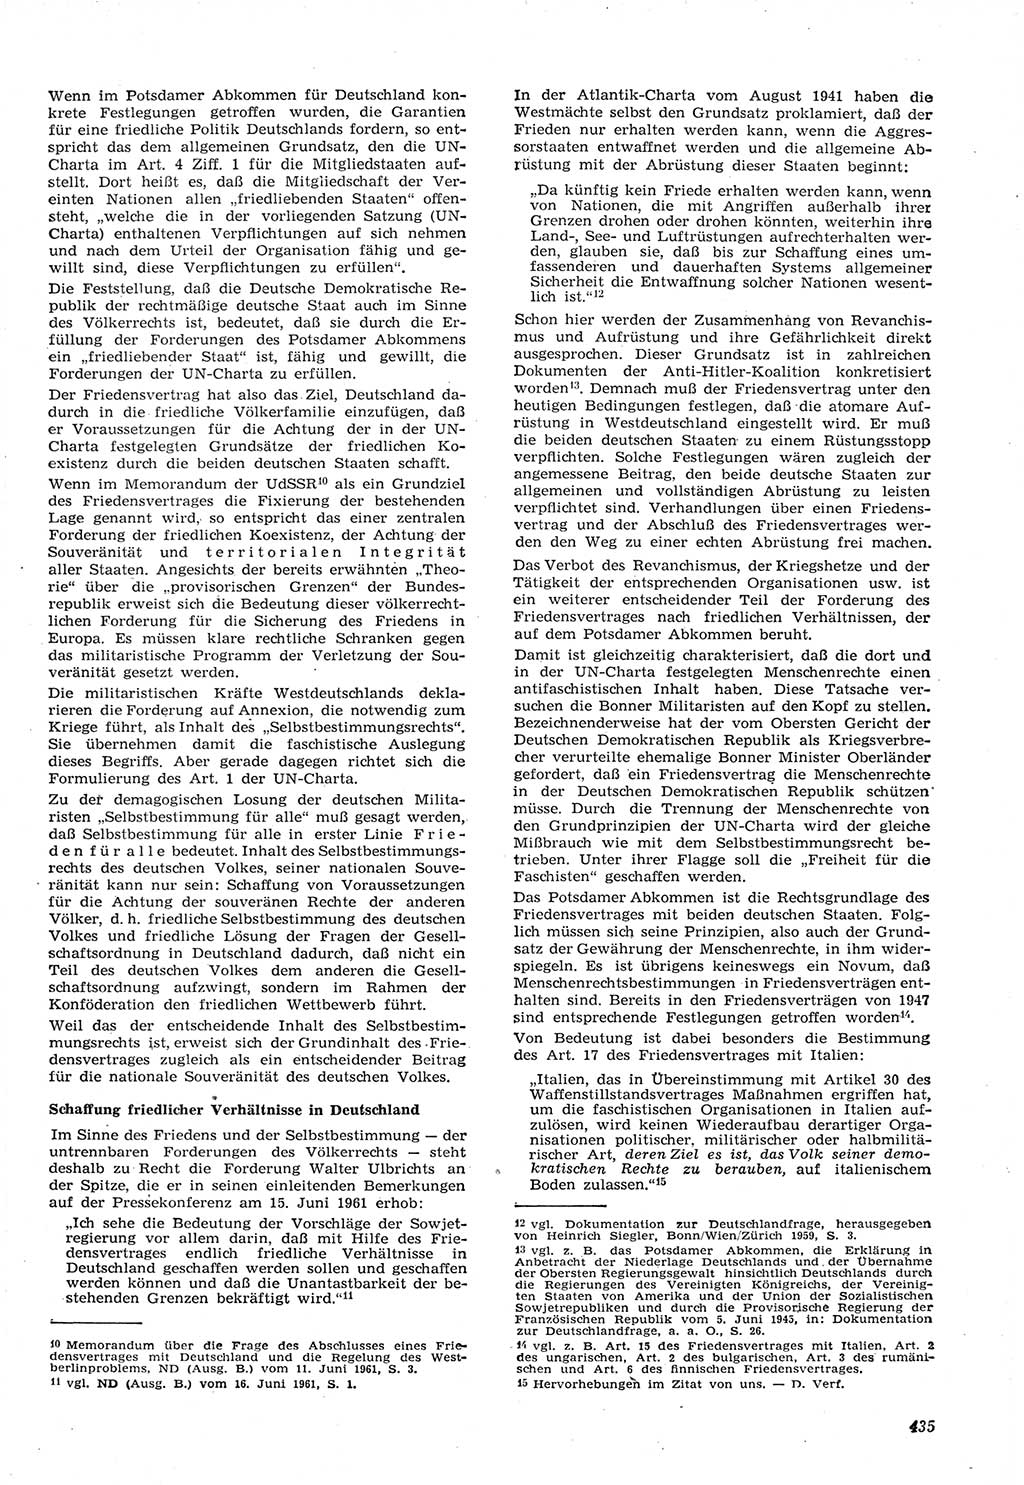 Neue Justiz (NJ), Zeitschrift für Recht und Rechtswissenschaft [Deutsche Demokratische Republik (DDR)], 15. Jahrgang 1961, Seite 435 (NJ DDR 1961, S. 435)